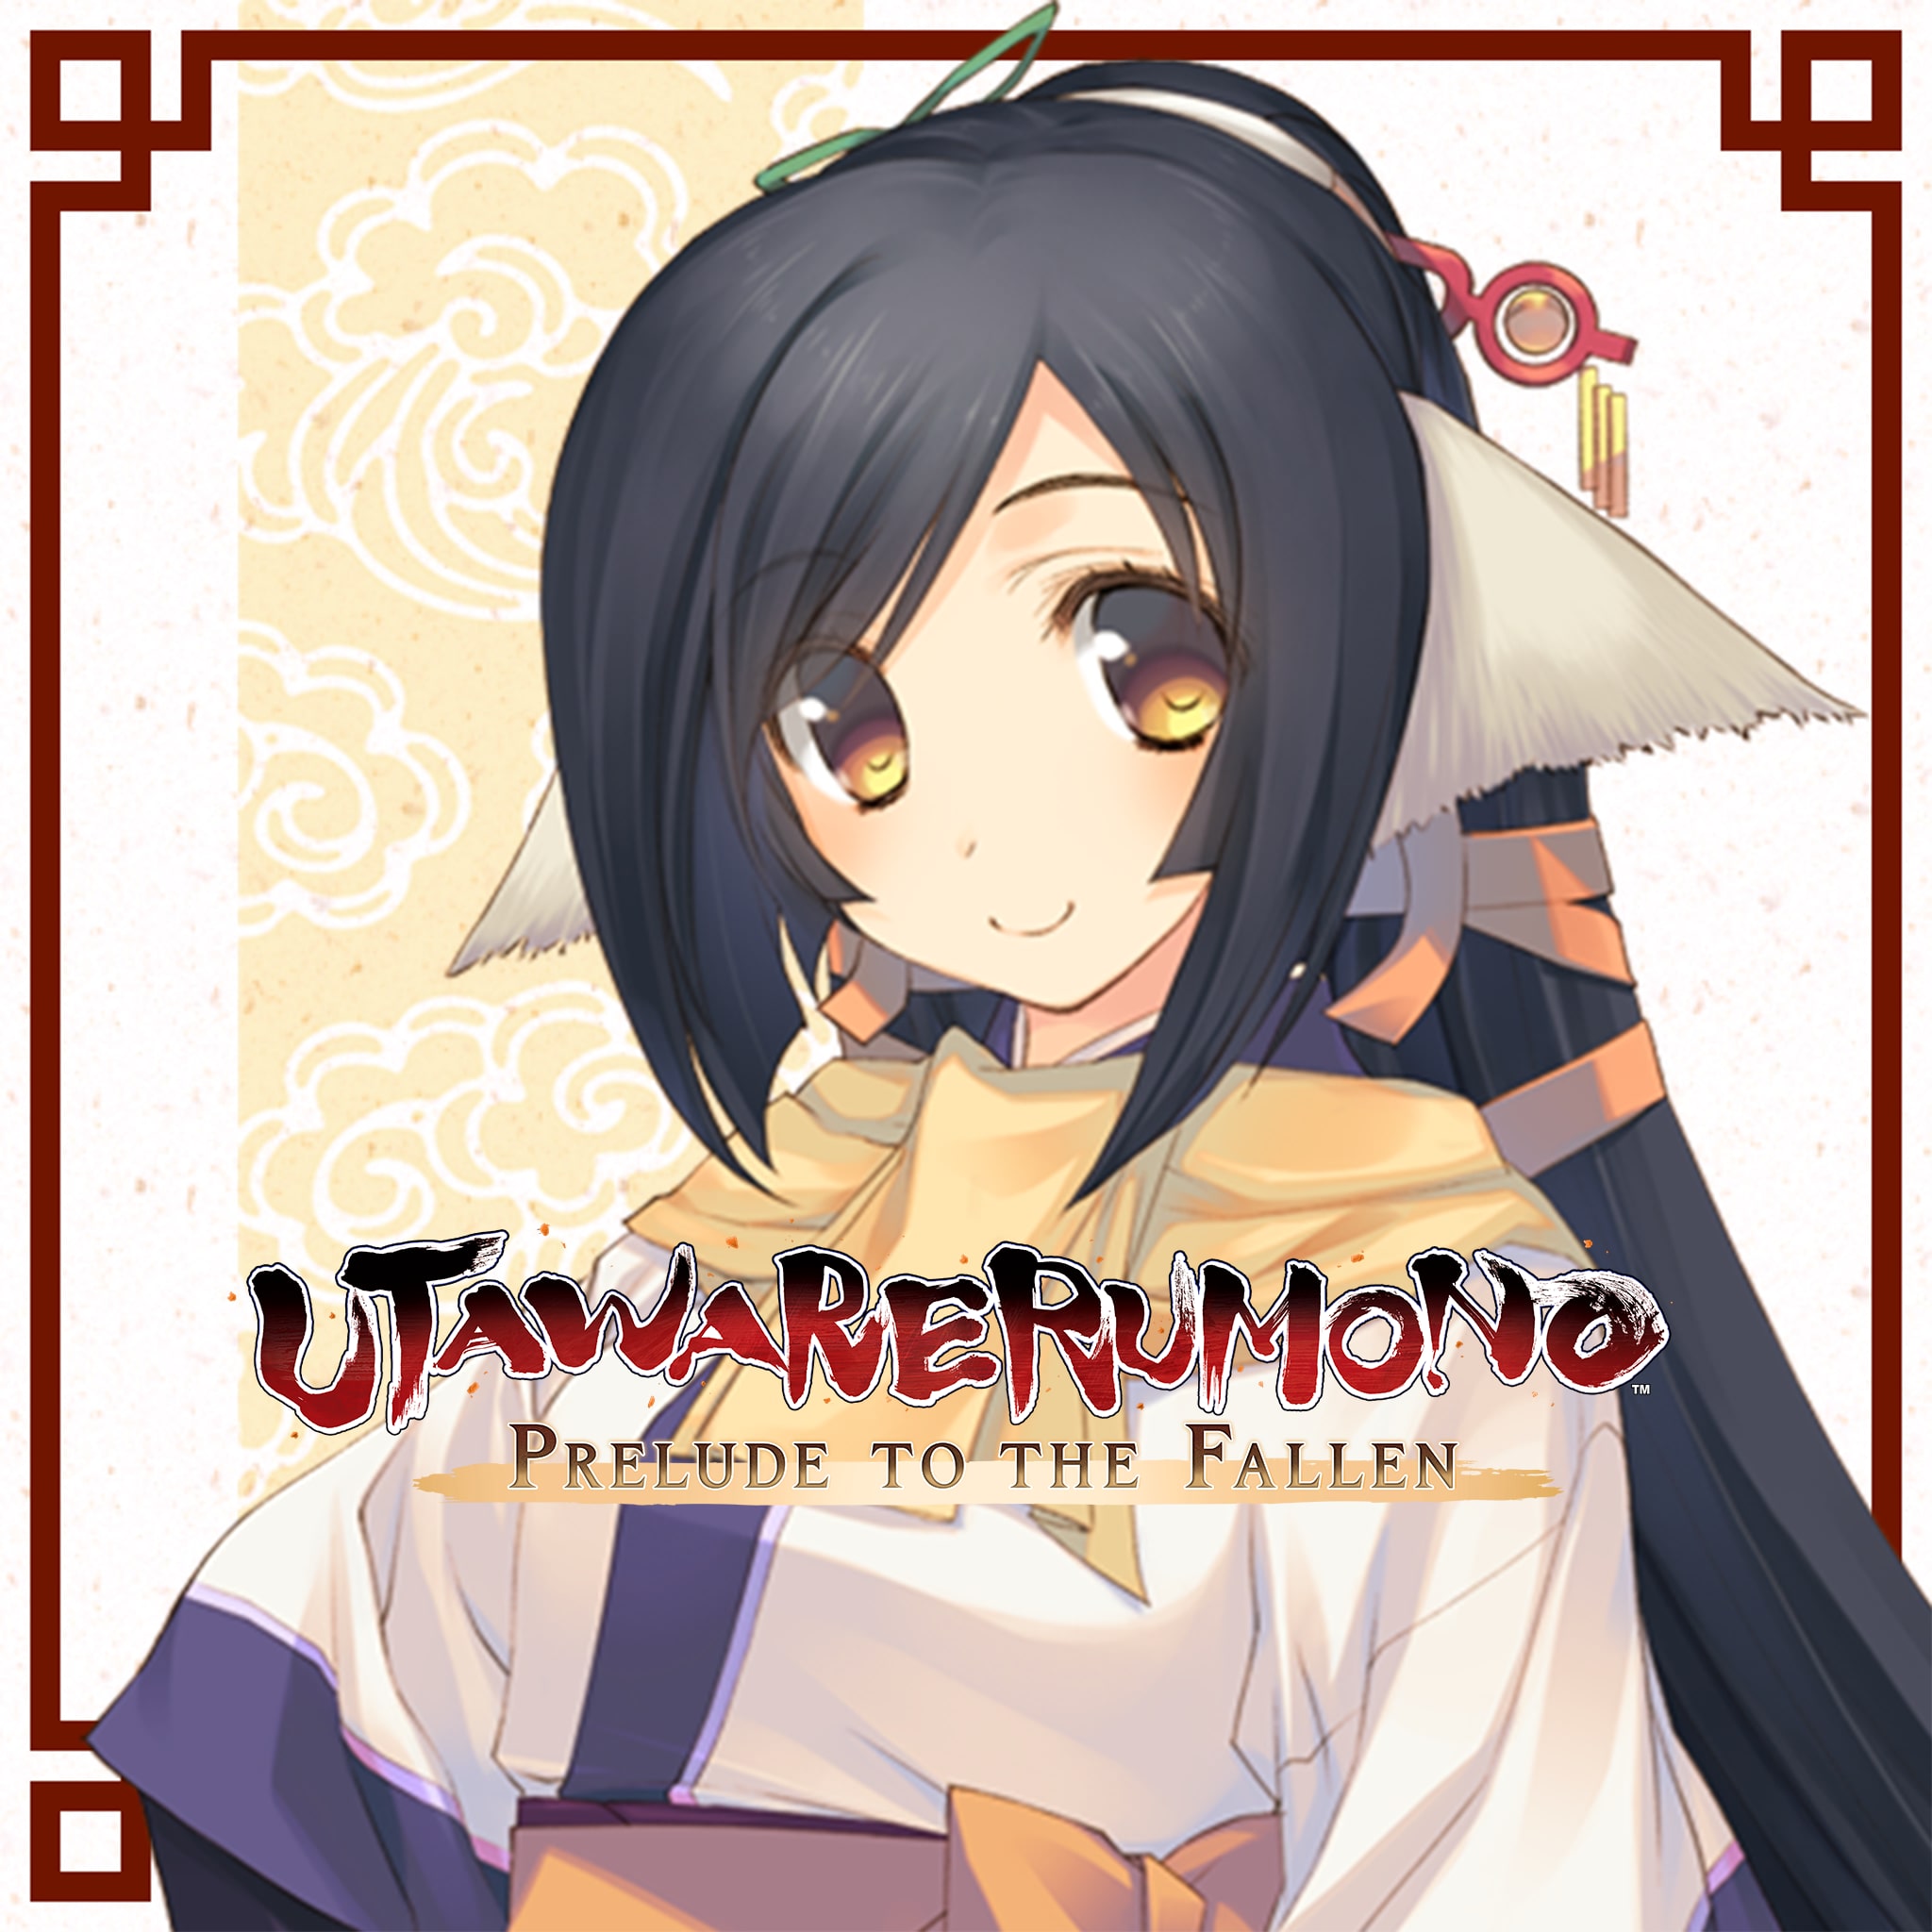 Utawarerumono: Prelude to the Fallen - DLC Character: Kuon